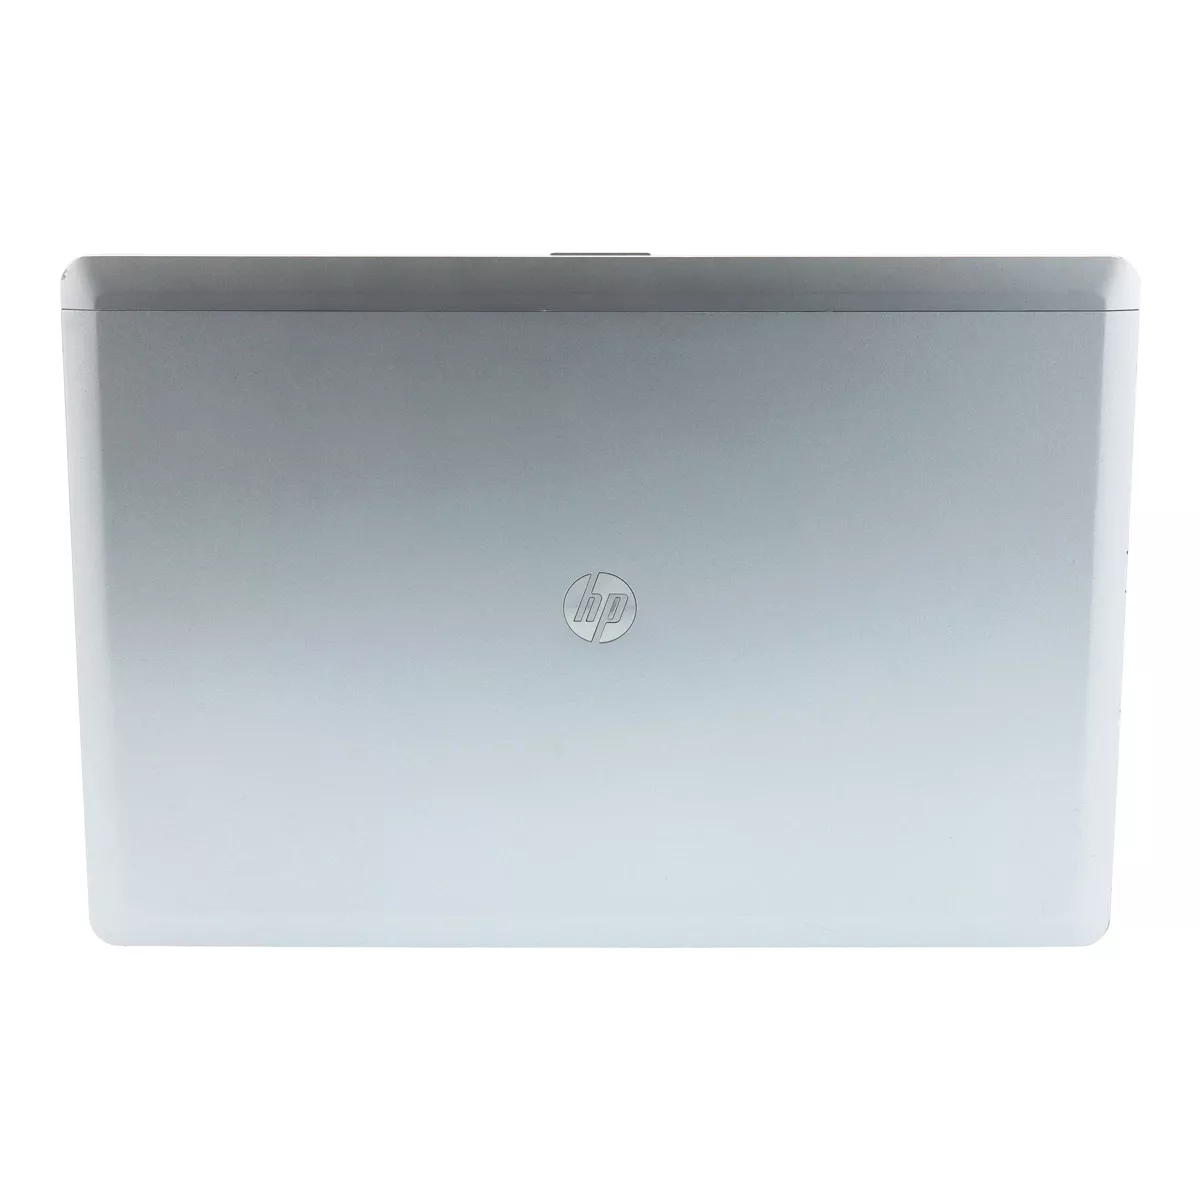 HP EliteBook 9470M Core i7 3687U 2,10 GHz 256 GB SSD A